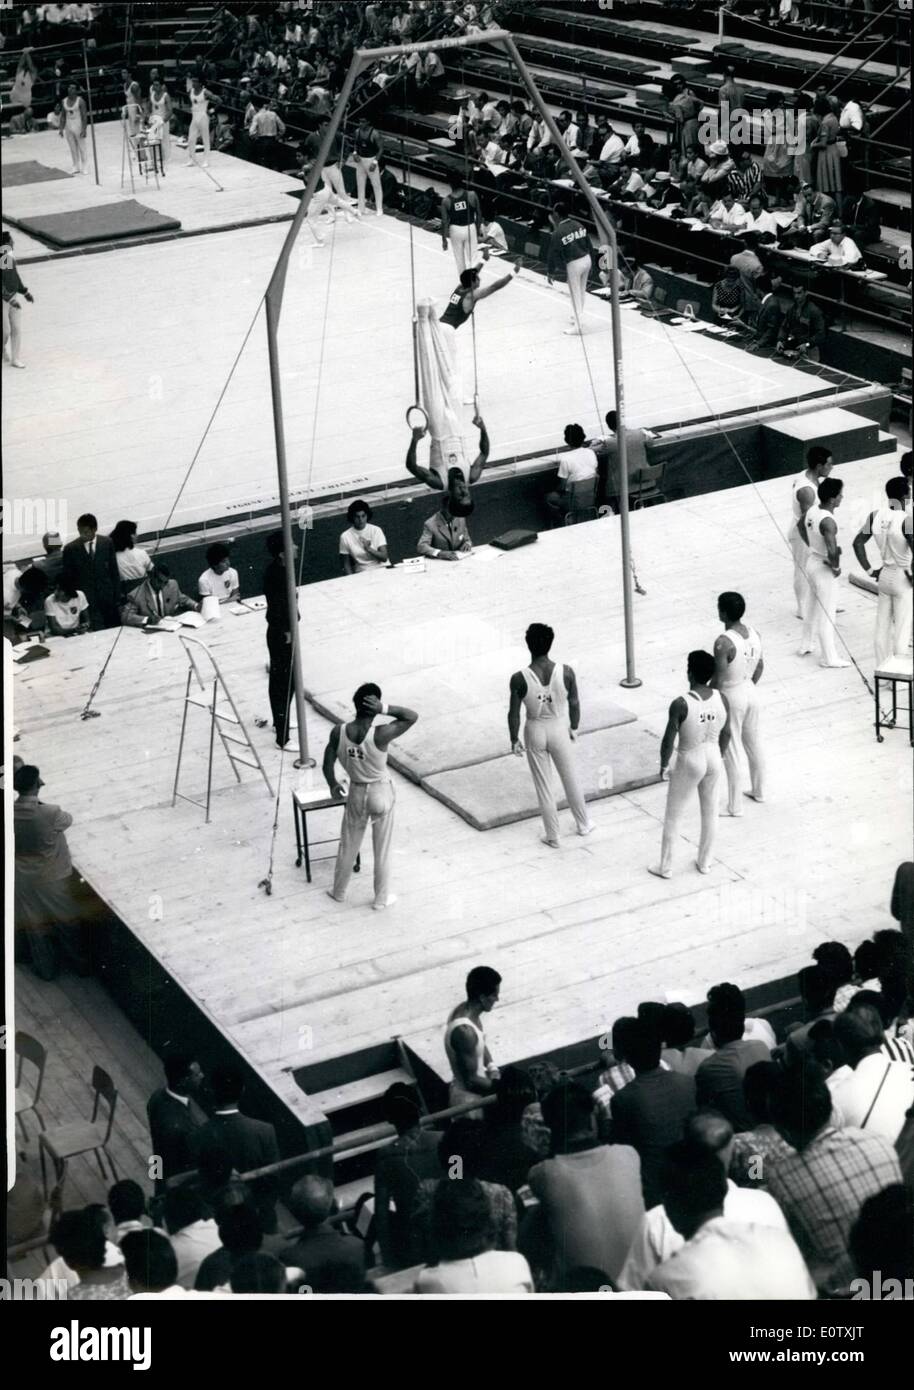 Septembre 05, 1960 - Gymnastique dans environs historique. : gymnastique, a commencé dans le cadre historique de Terme di Caracalla ce matin. La photo montre la vue générale pendant la gymnastique, ce matin. Banque D'Images